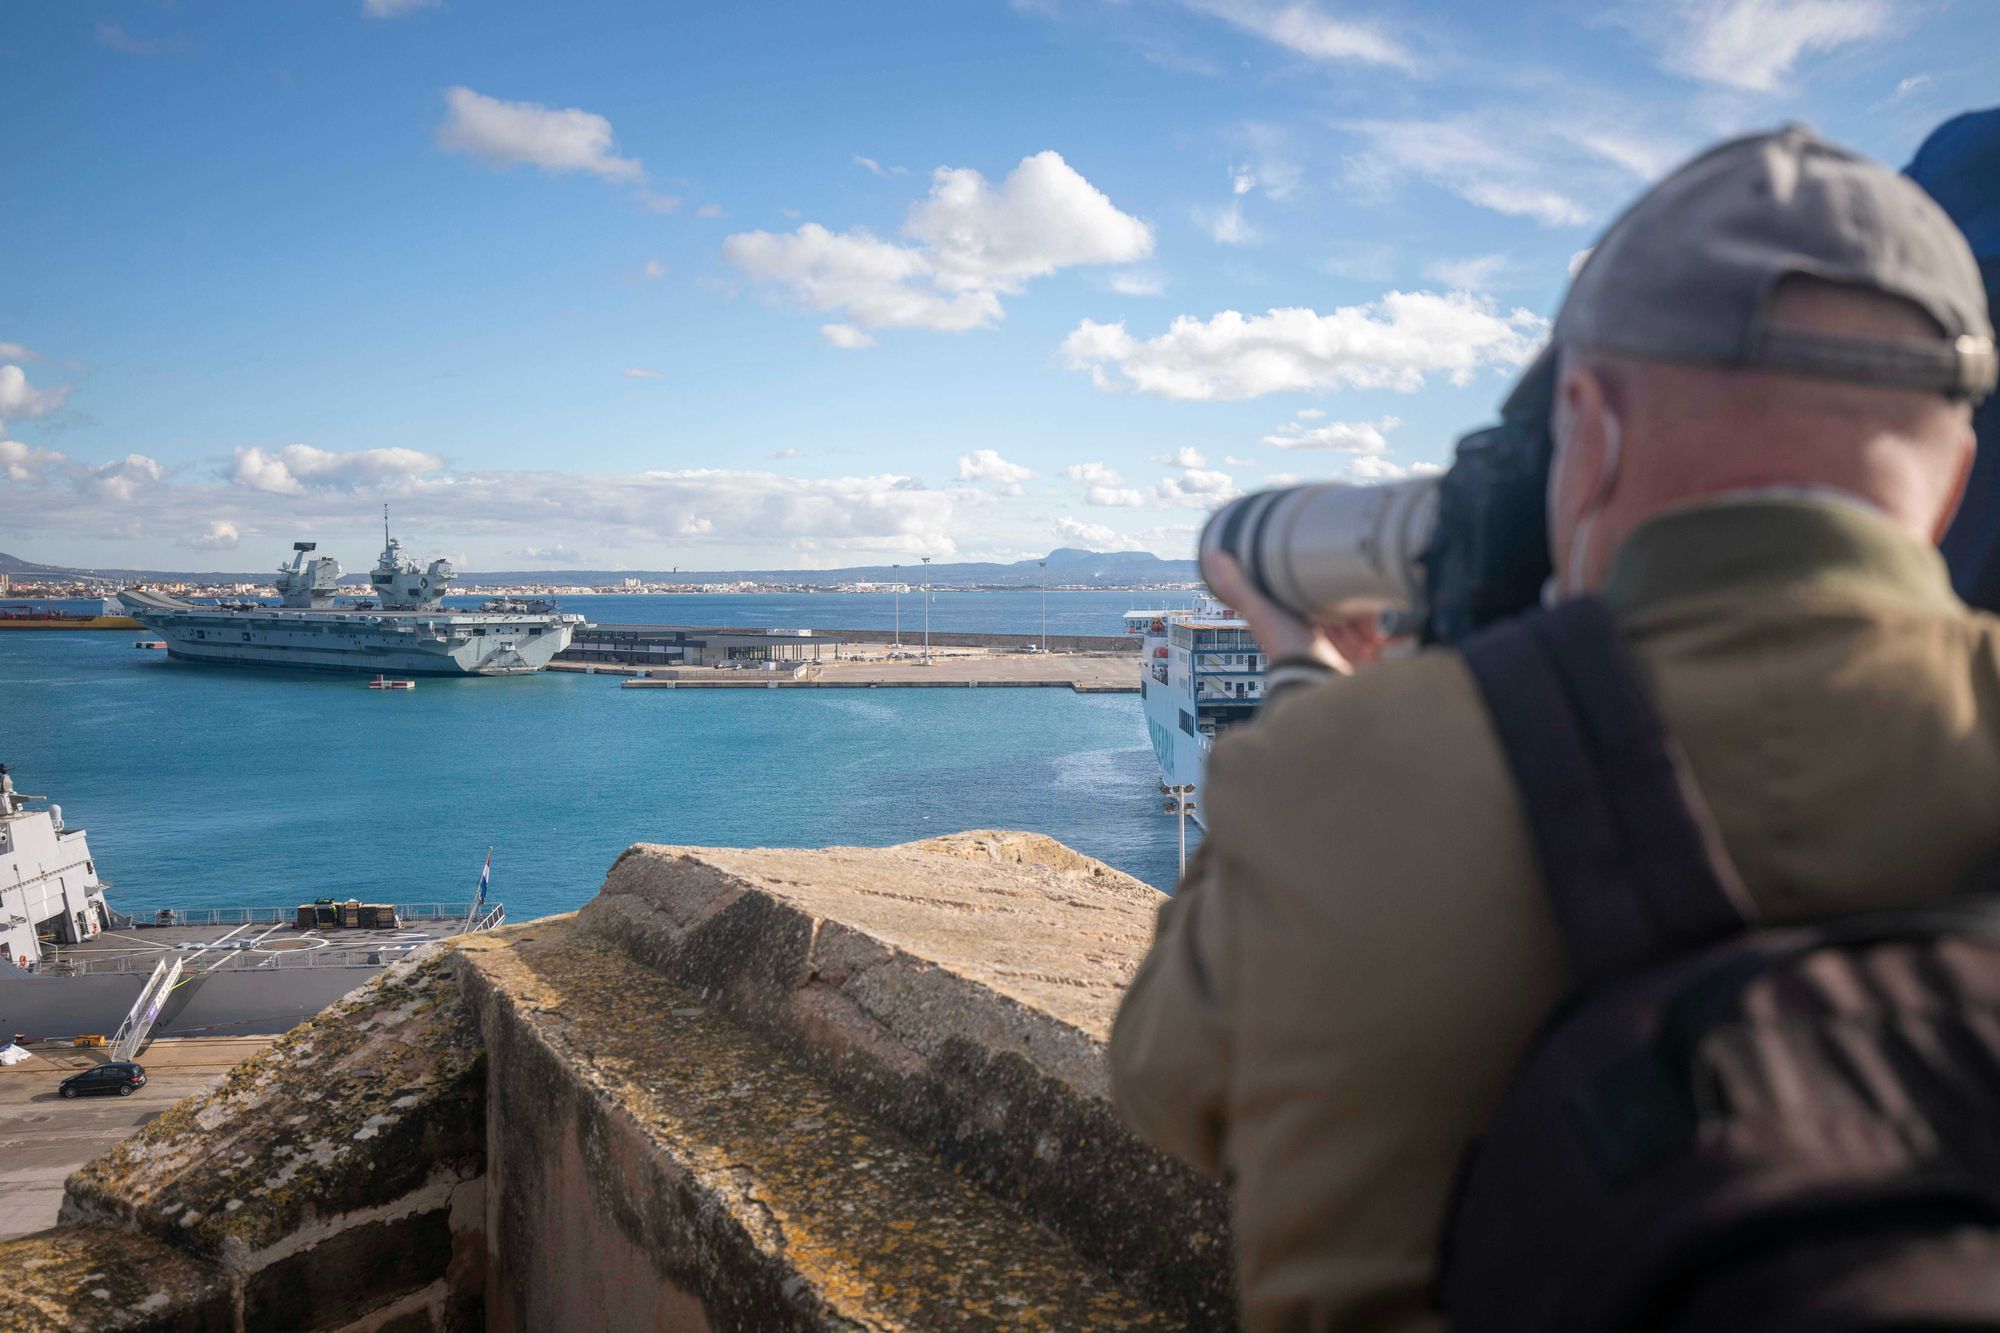 Altes Fort in Palma wird zum Aussichtspunkt auf britischen Flugzeugträger